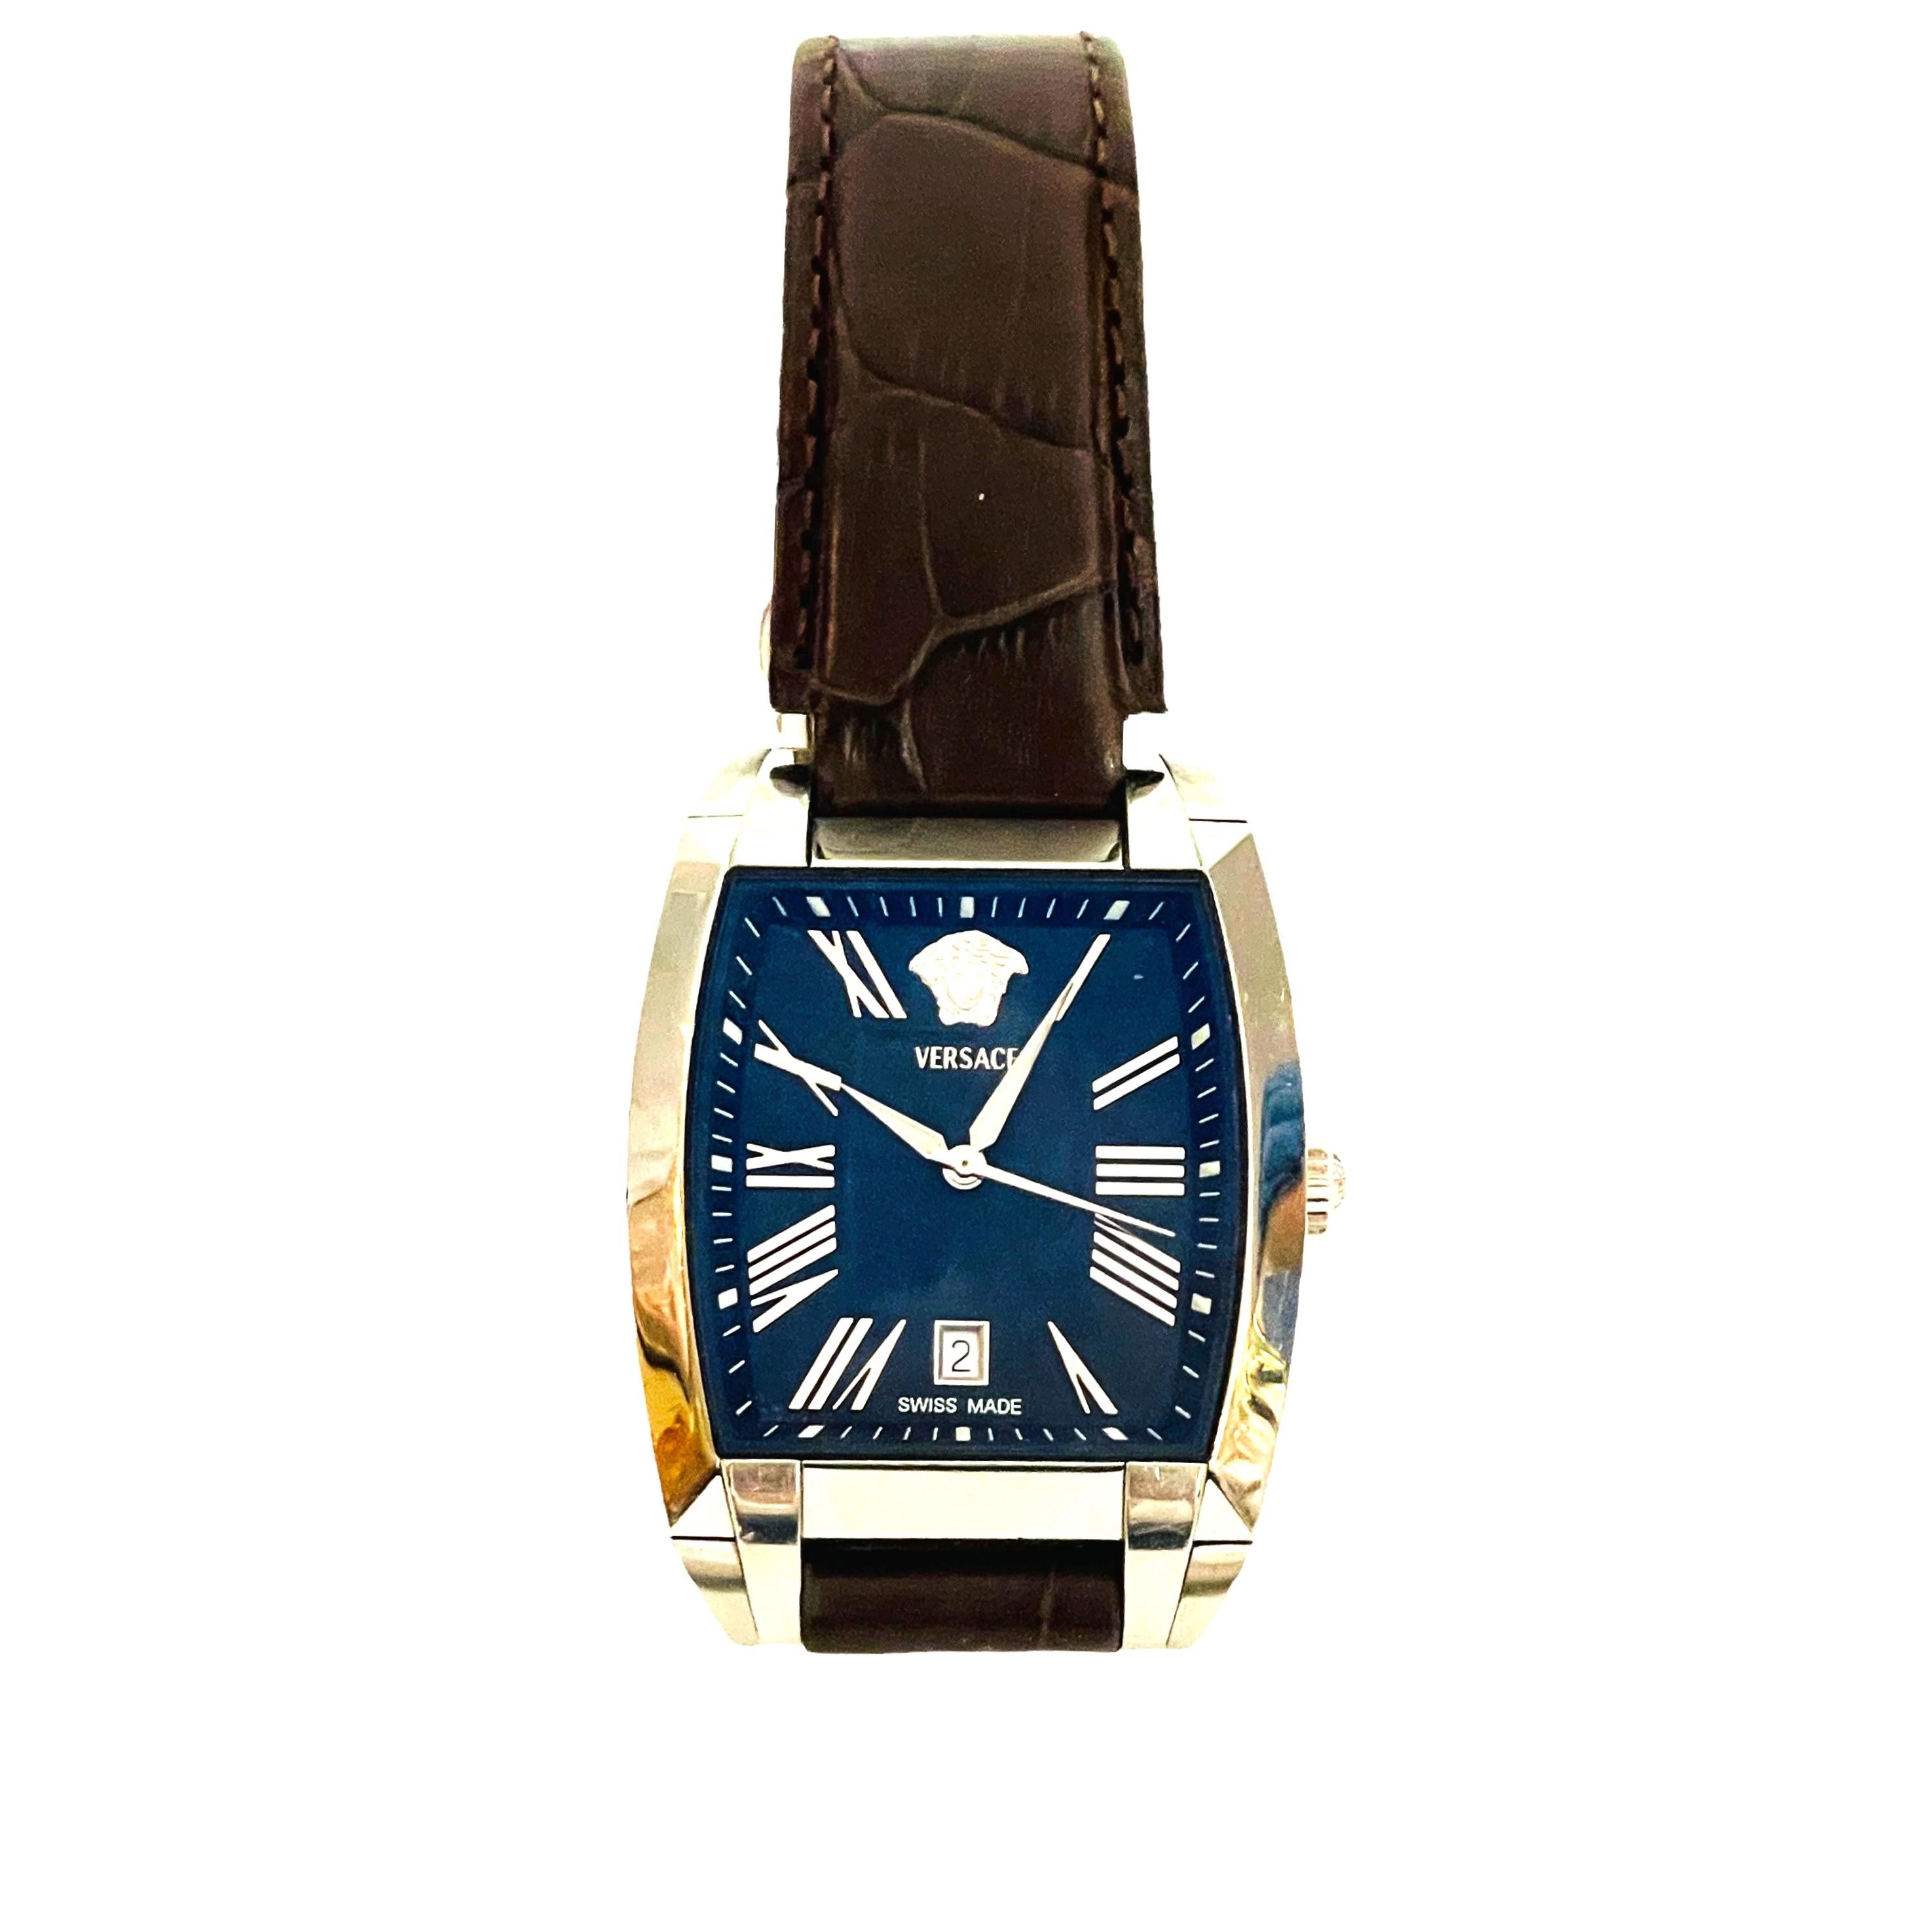 Vintage Versace Tonneau Automatic Men's Watch WLA99 1 3/8in Blue & Black Face 4